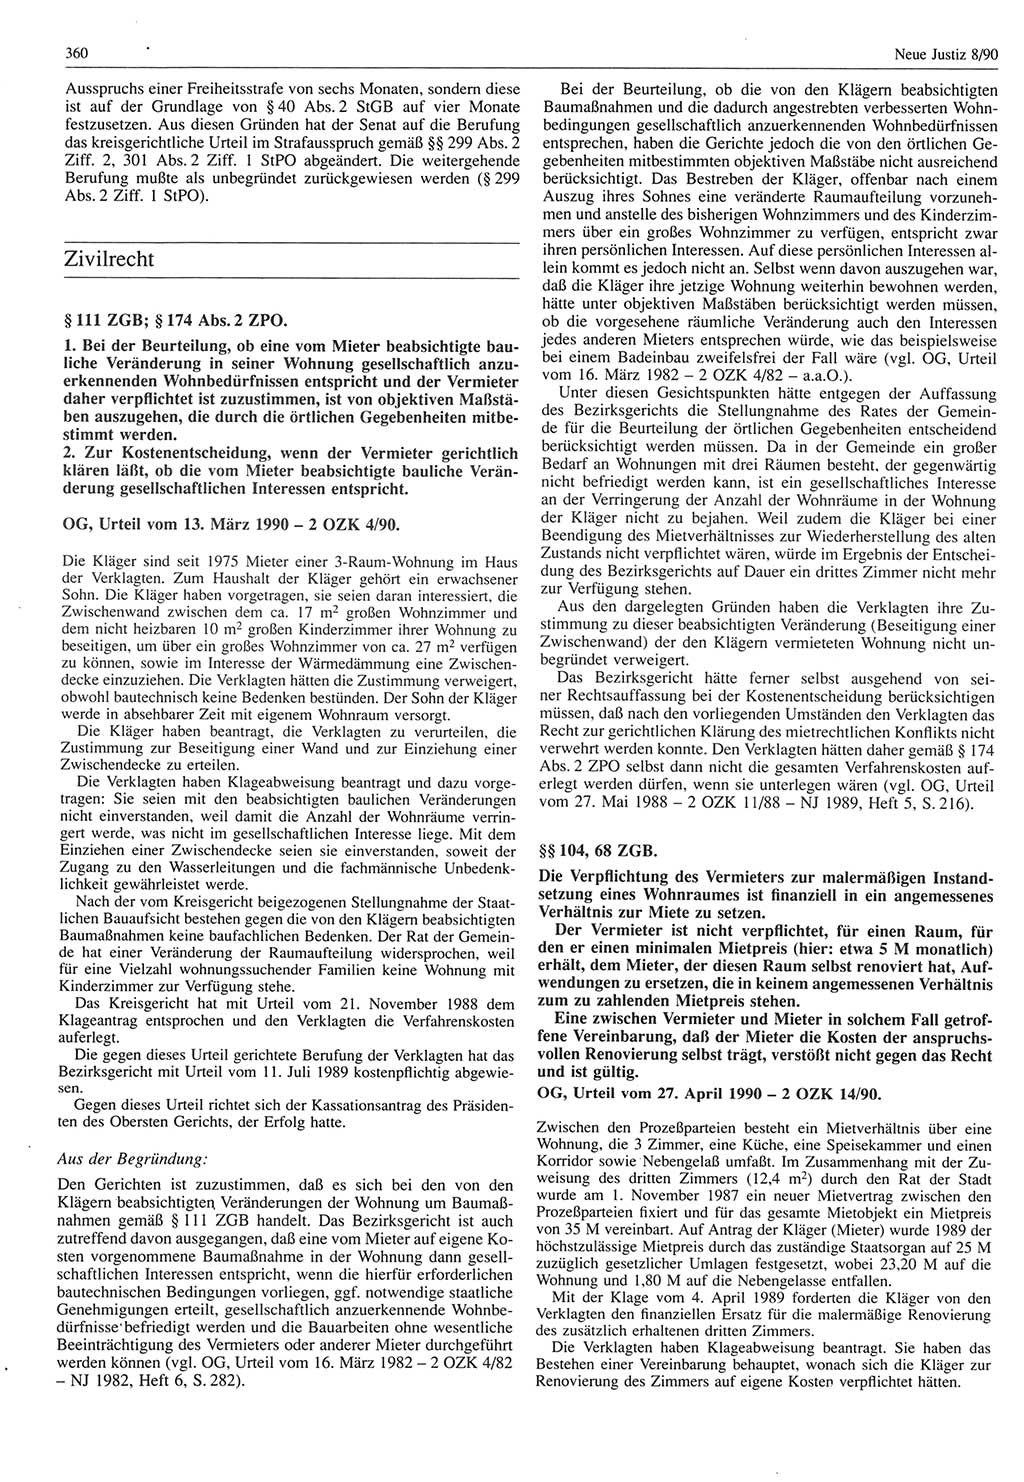 Neue Justiz (NJ), Zeitschrift für Rechtsetzung und Rechtsanwendung [Deutsche Demokratische Republik (DDR)], 44. Jahrgang 1990, Seite 360 (NJ DDR 1990, S. 360)